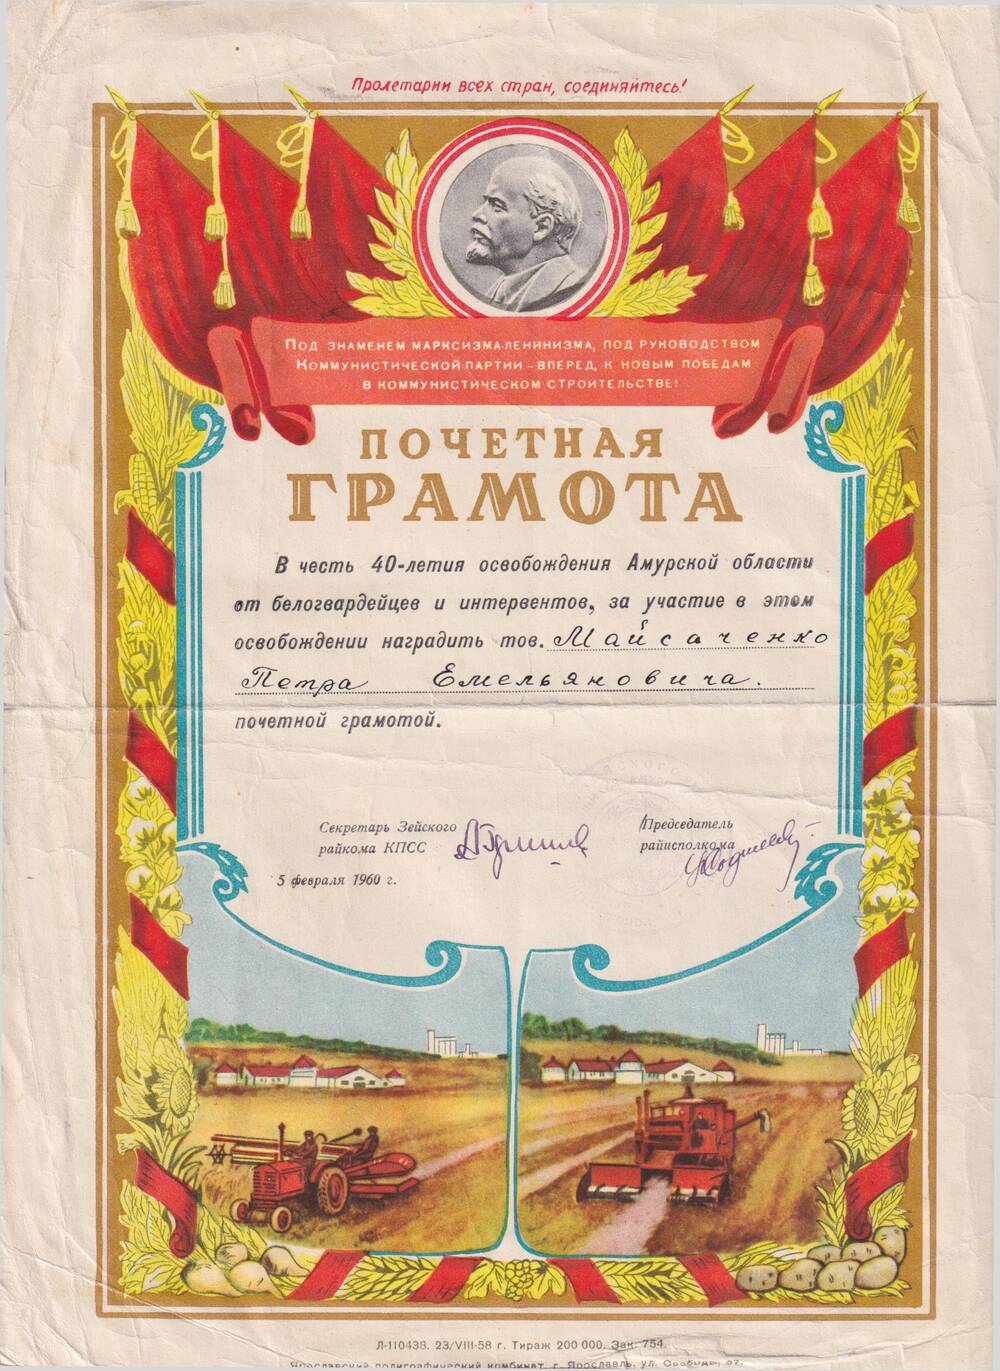 Почетная грамота Мойсаченко Петру Емельяновичу в честь 40-летия освобождения Амурской области от белогвардейцев и интервентов.